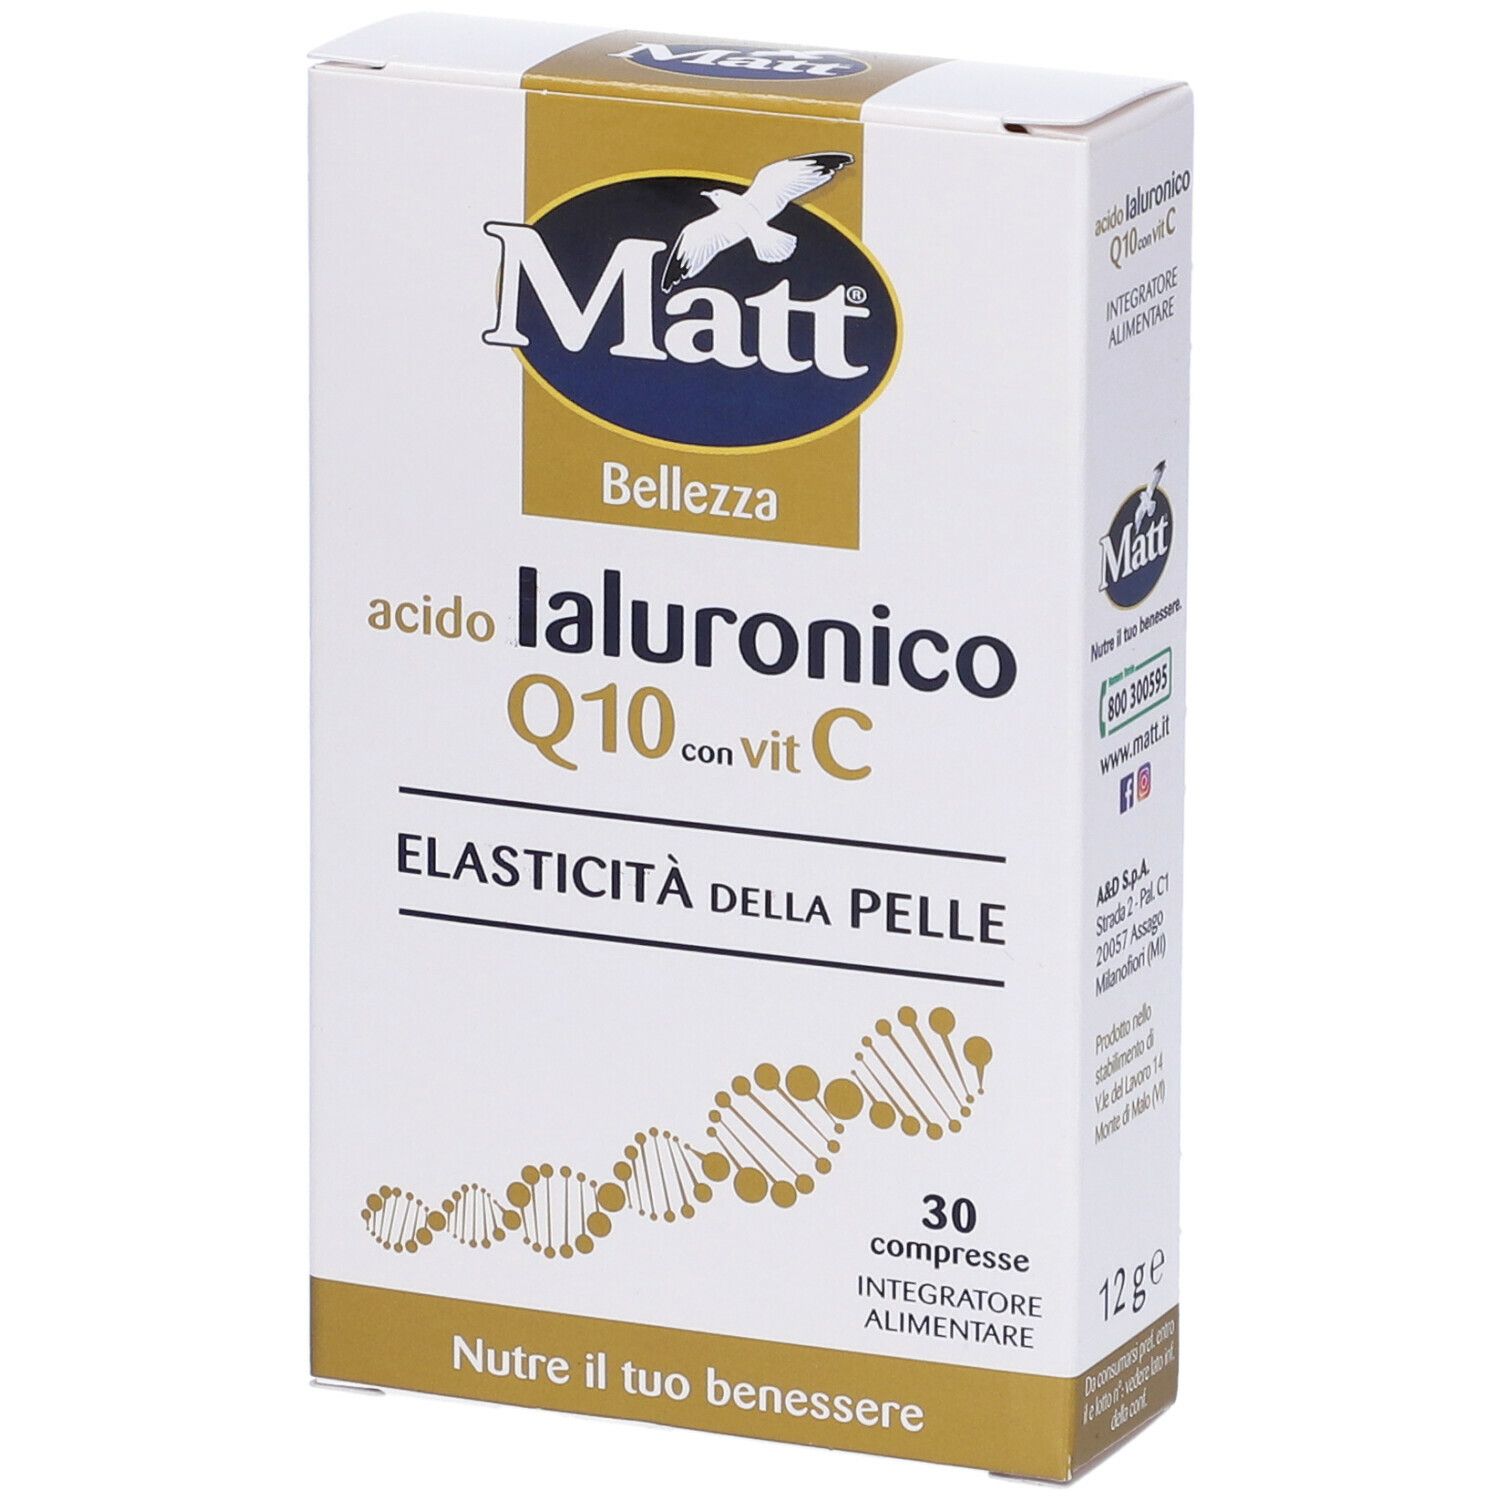 Image of Matt® Benessere acido Ialuronico Q10 con vit C